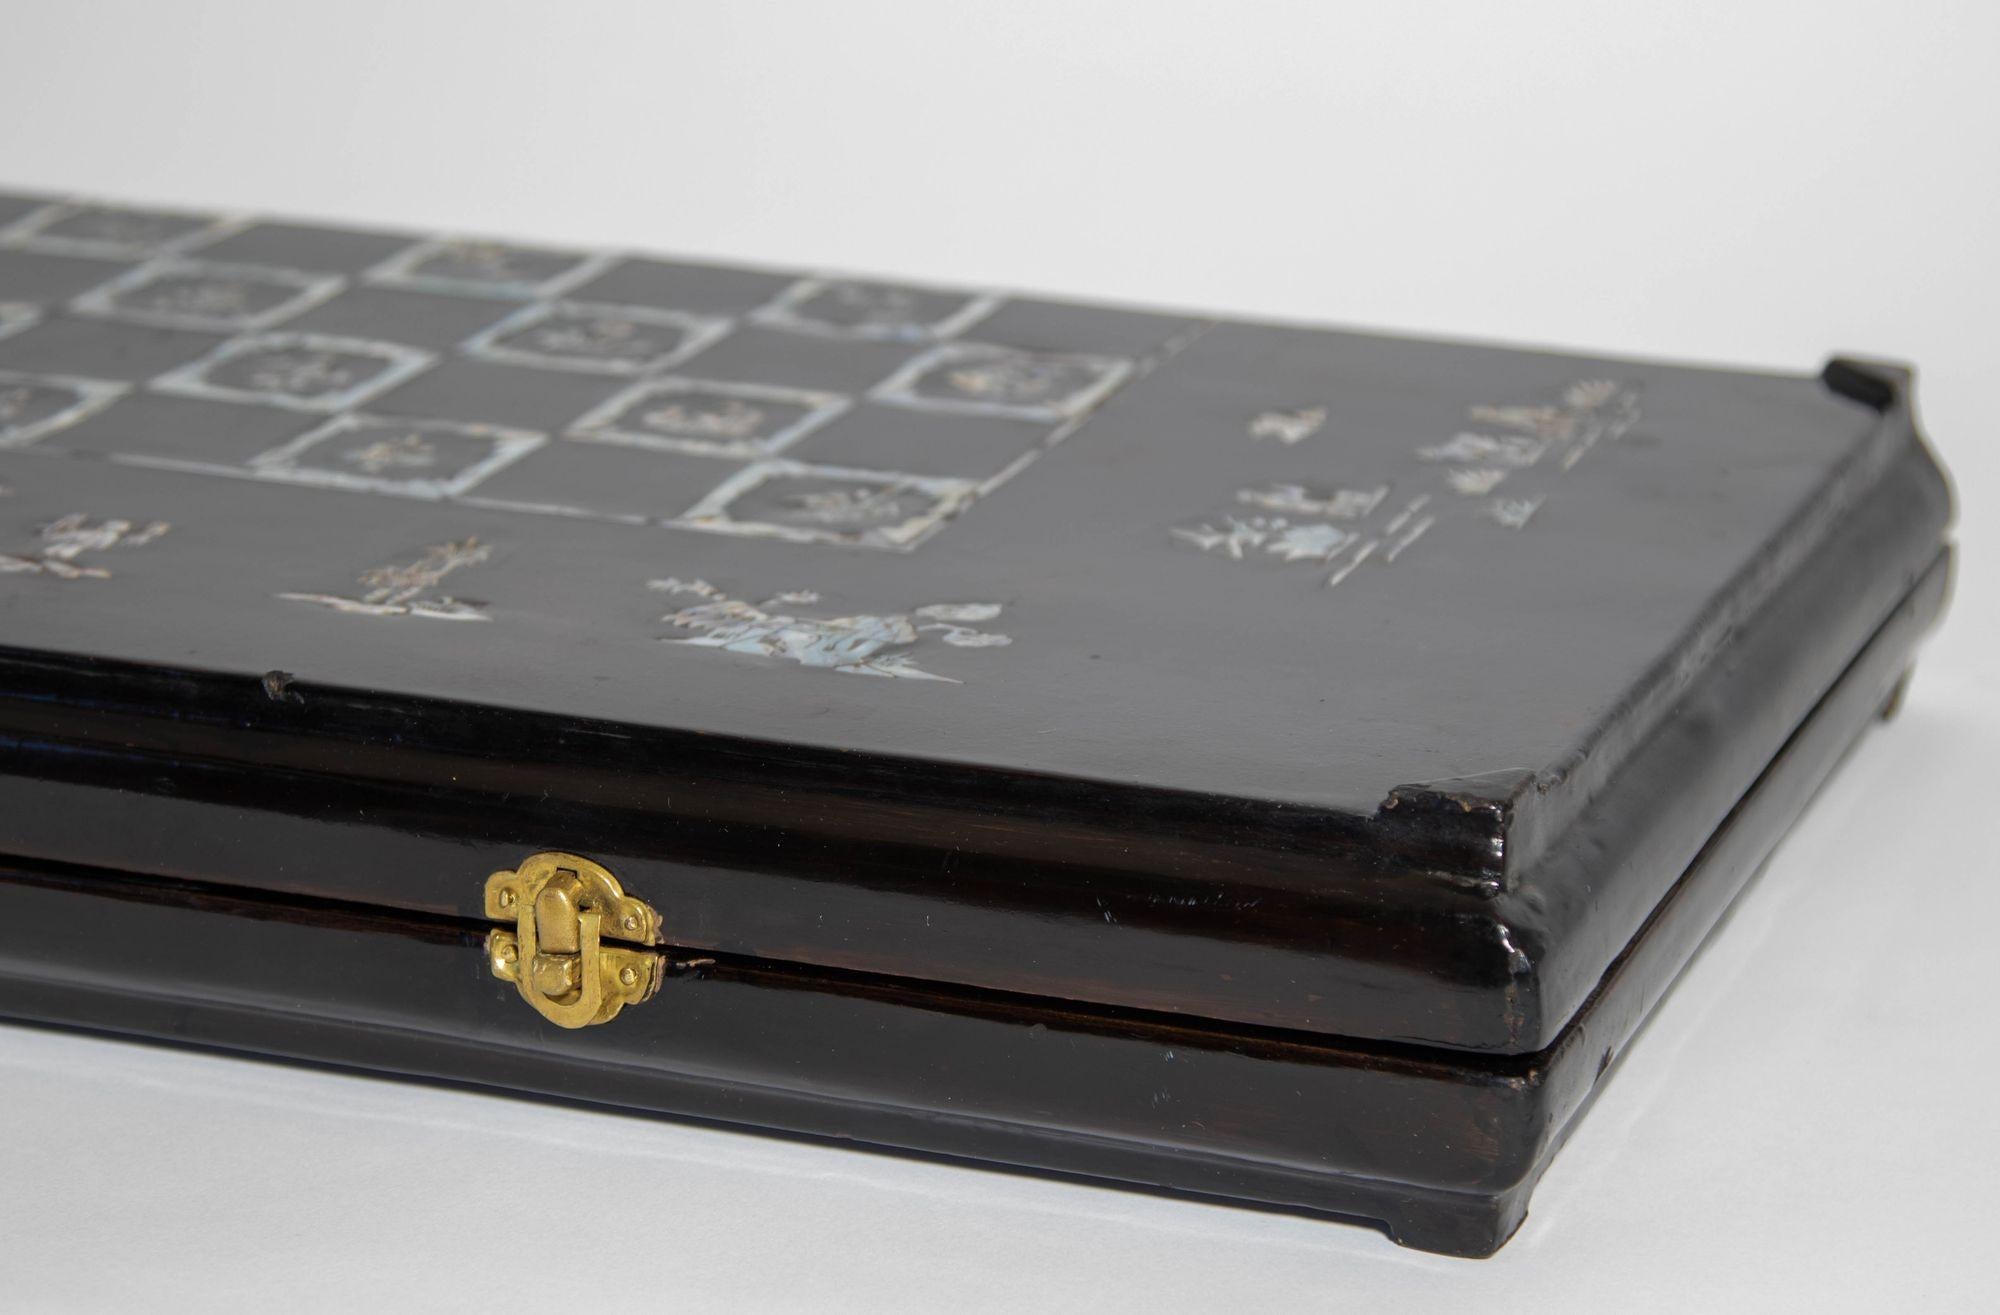 Antike viktorianische chinesische Export schwarz lackiertem Holz und Perlmutt eingelegt Falten Spiele Box, Backgammon, Schach und Dame-Spiel.
Das feine antike chinesische Spielbrett aus schwarz lackiertem Holz mit Perlmutteinlagen ist außen mit